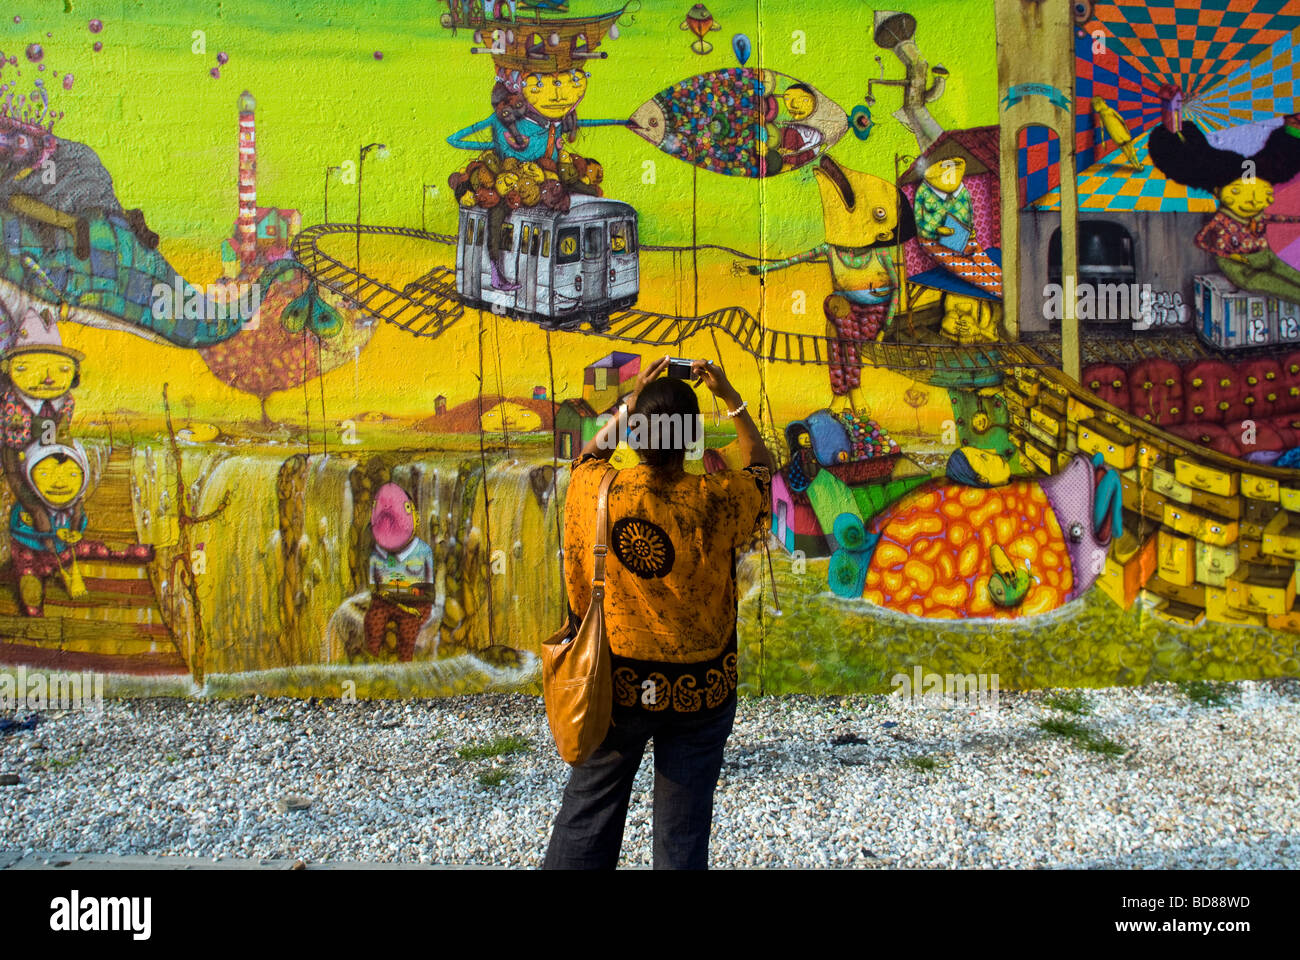 Passant fotografiert ein Wandbild von der brasilianischen Graffiti-Künstlern Os Gémeos in New York Stockfoto